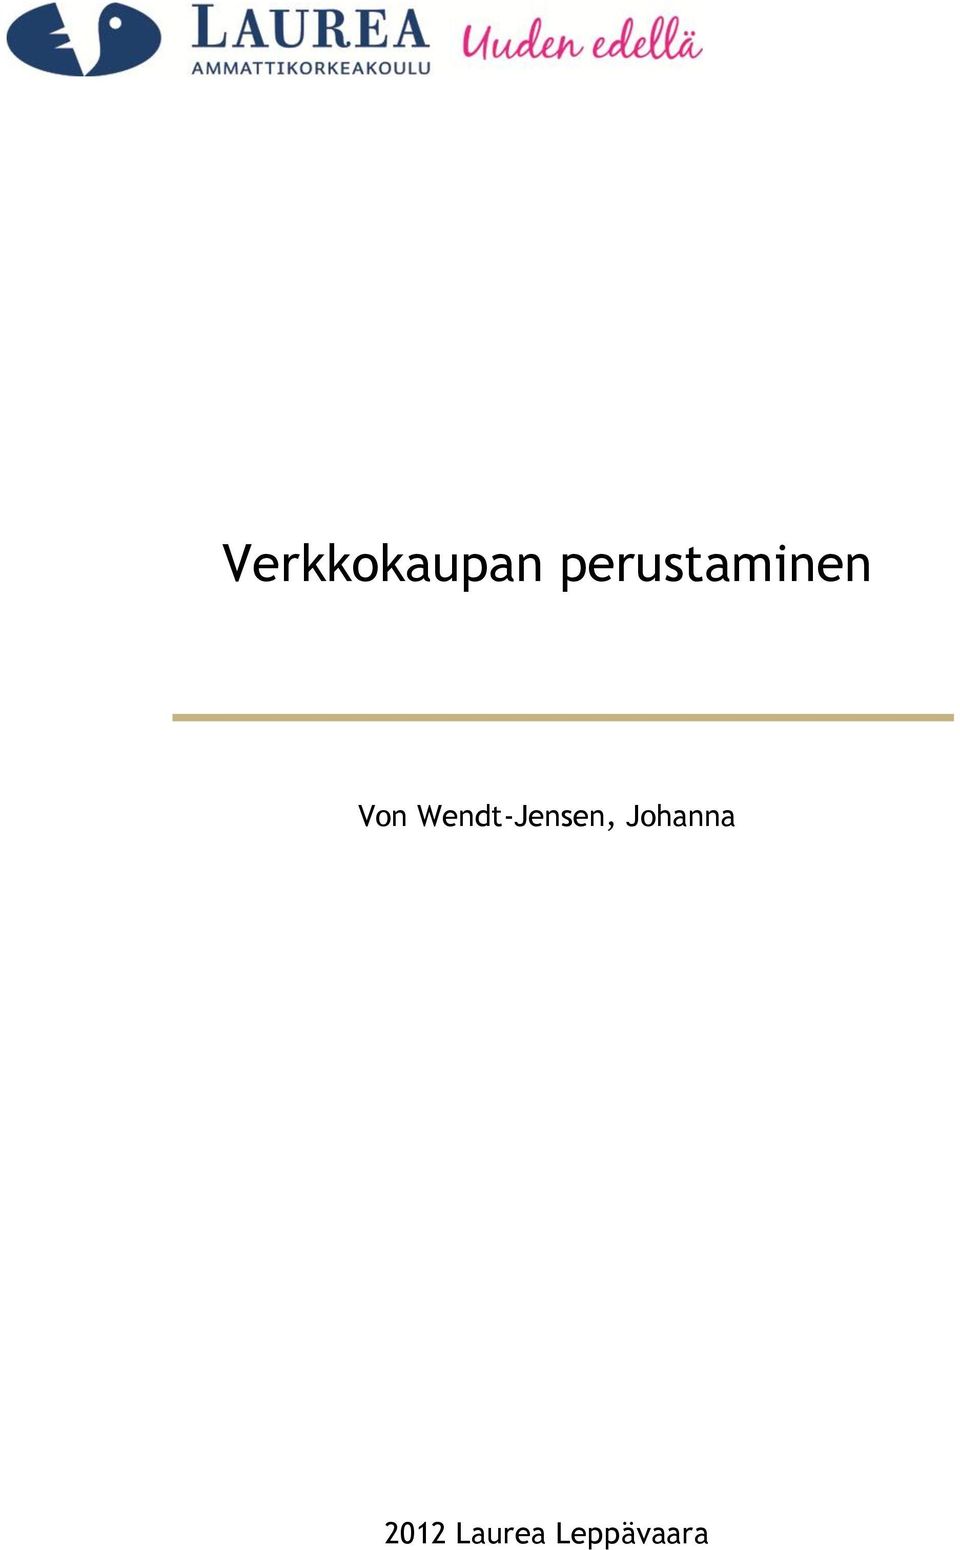 Wendt-Jensen,